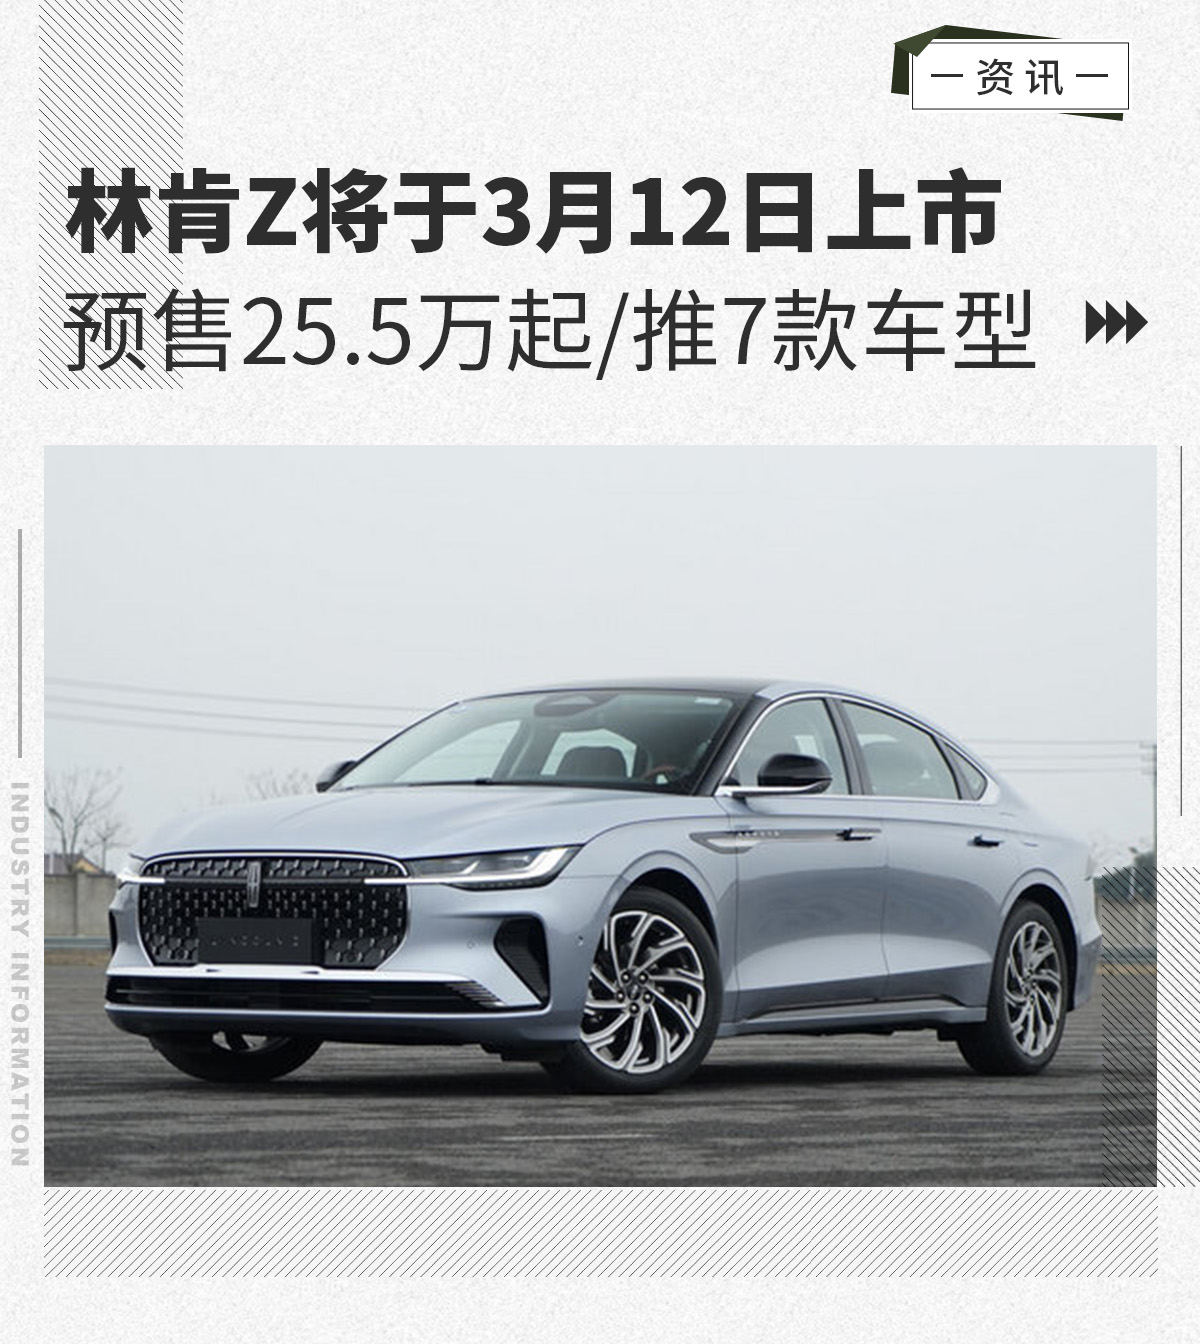 25.5万起/推7款车型 林肯Z将于3月12日上市